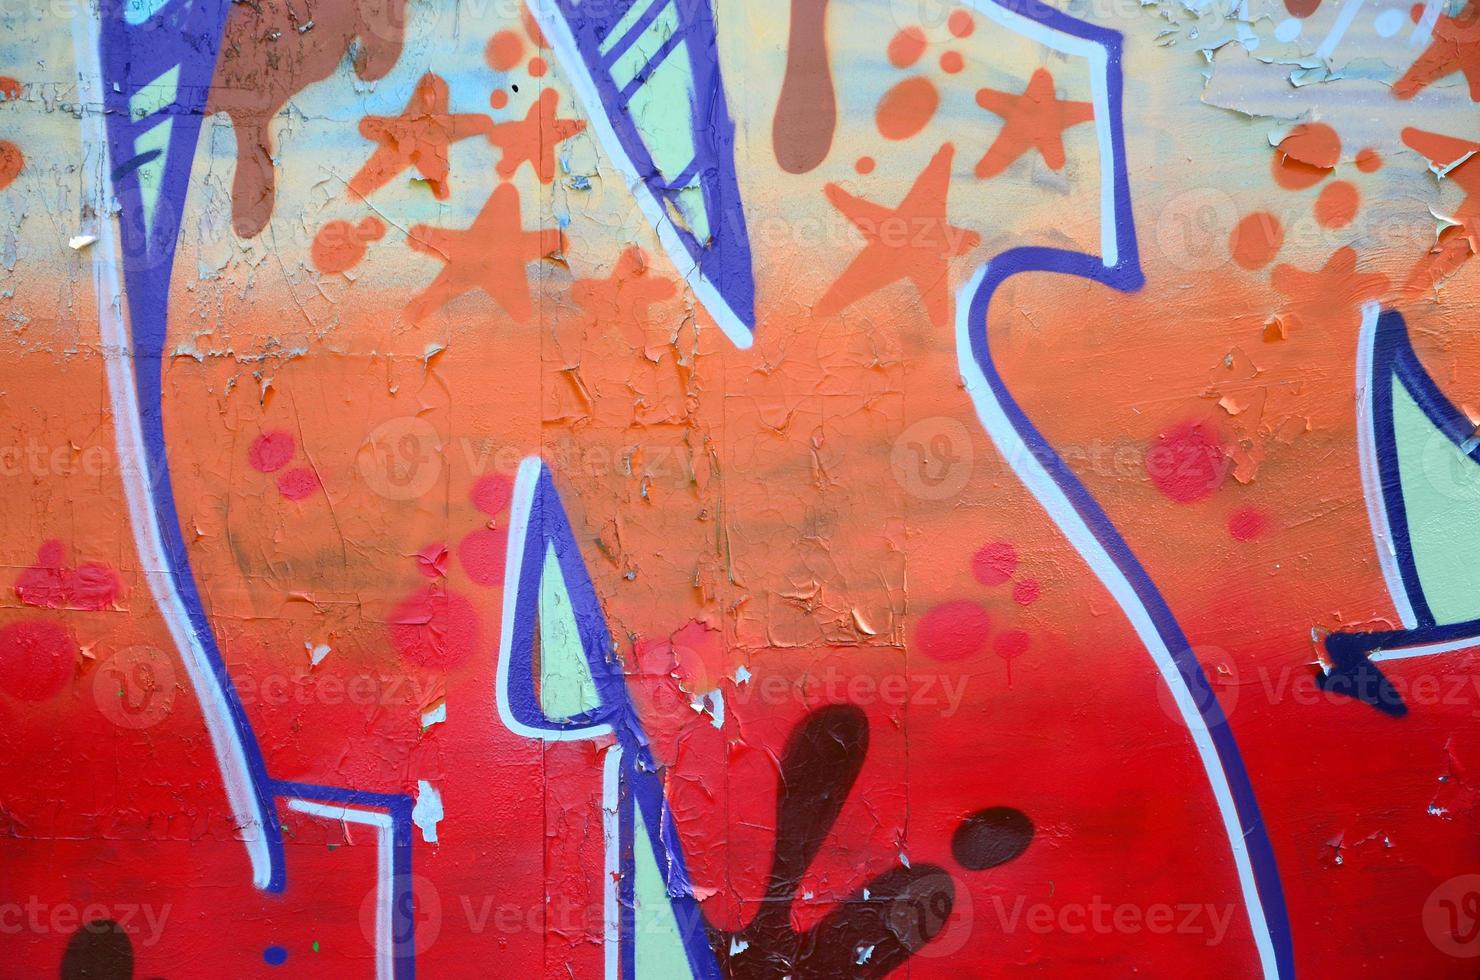 straat kunst. abstract achtergrond beeld van een fragment van een gekleurde graffiti schilderij in beige en oranje tonen foto